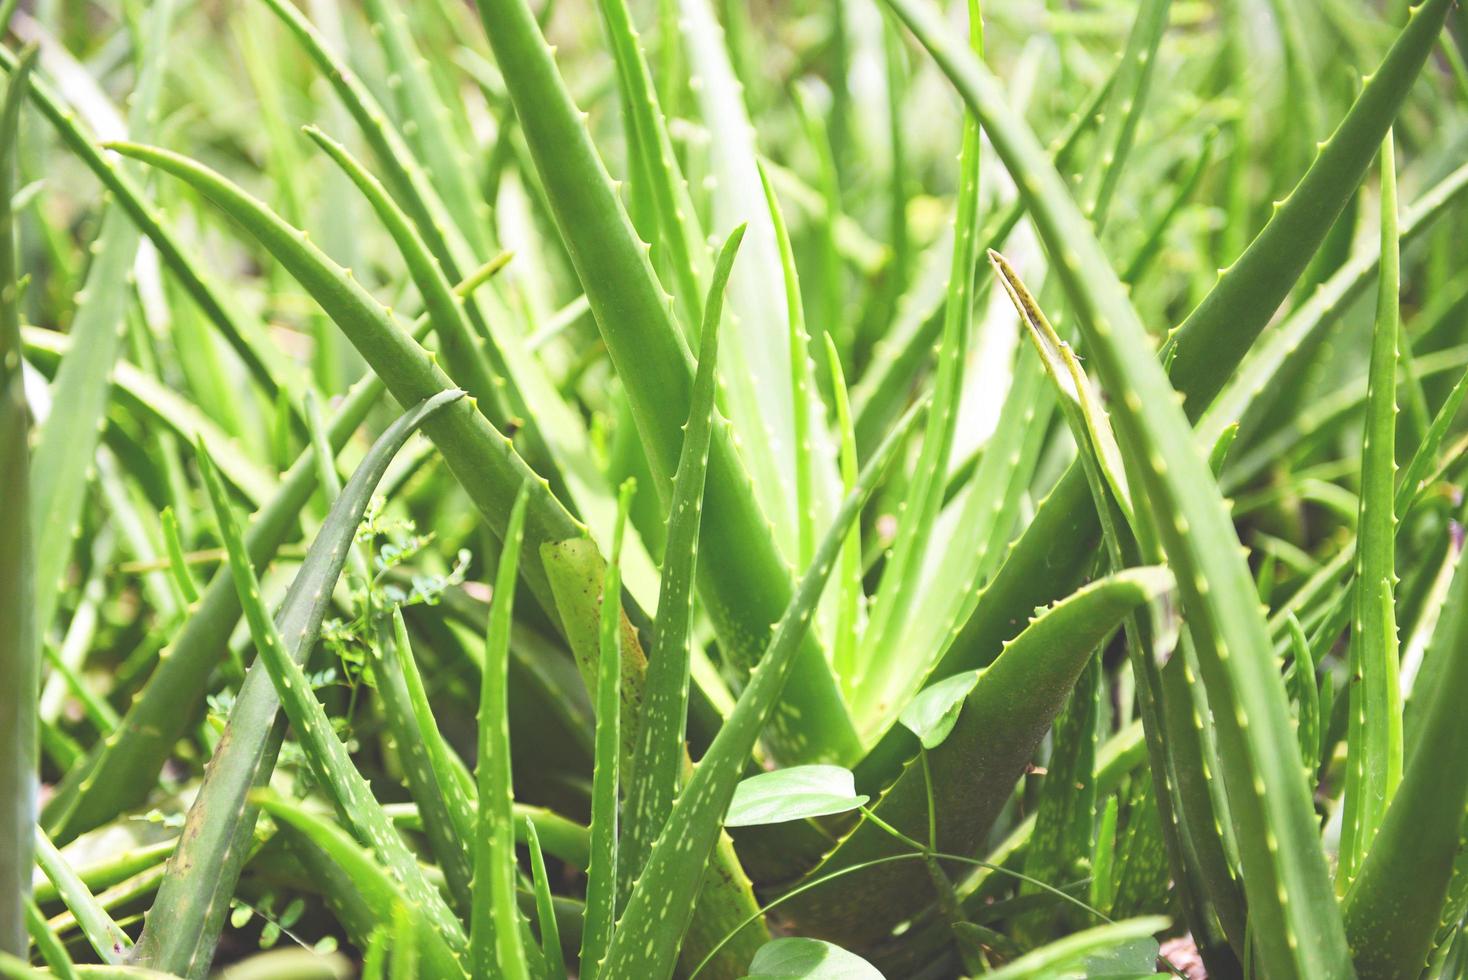 folha fresca de aloe vera ervas naturais e ervas medicinais - planta de aloe vera no fundo verde da natureza foto